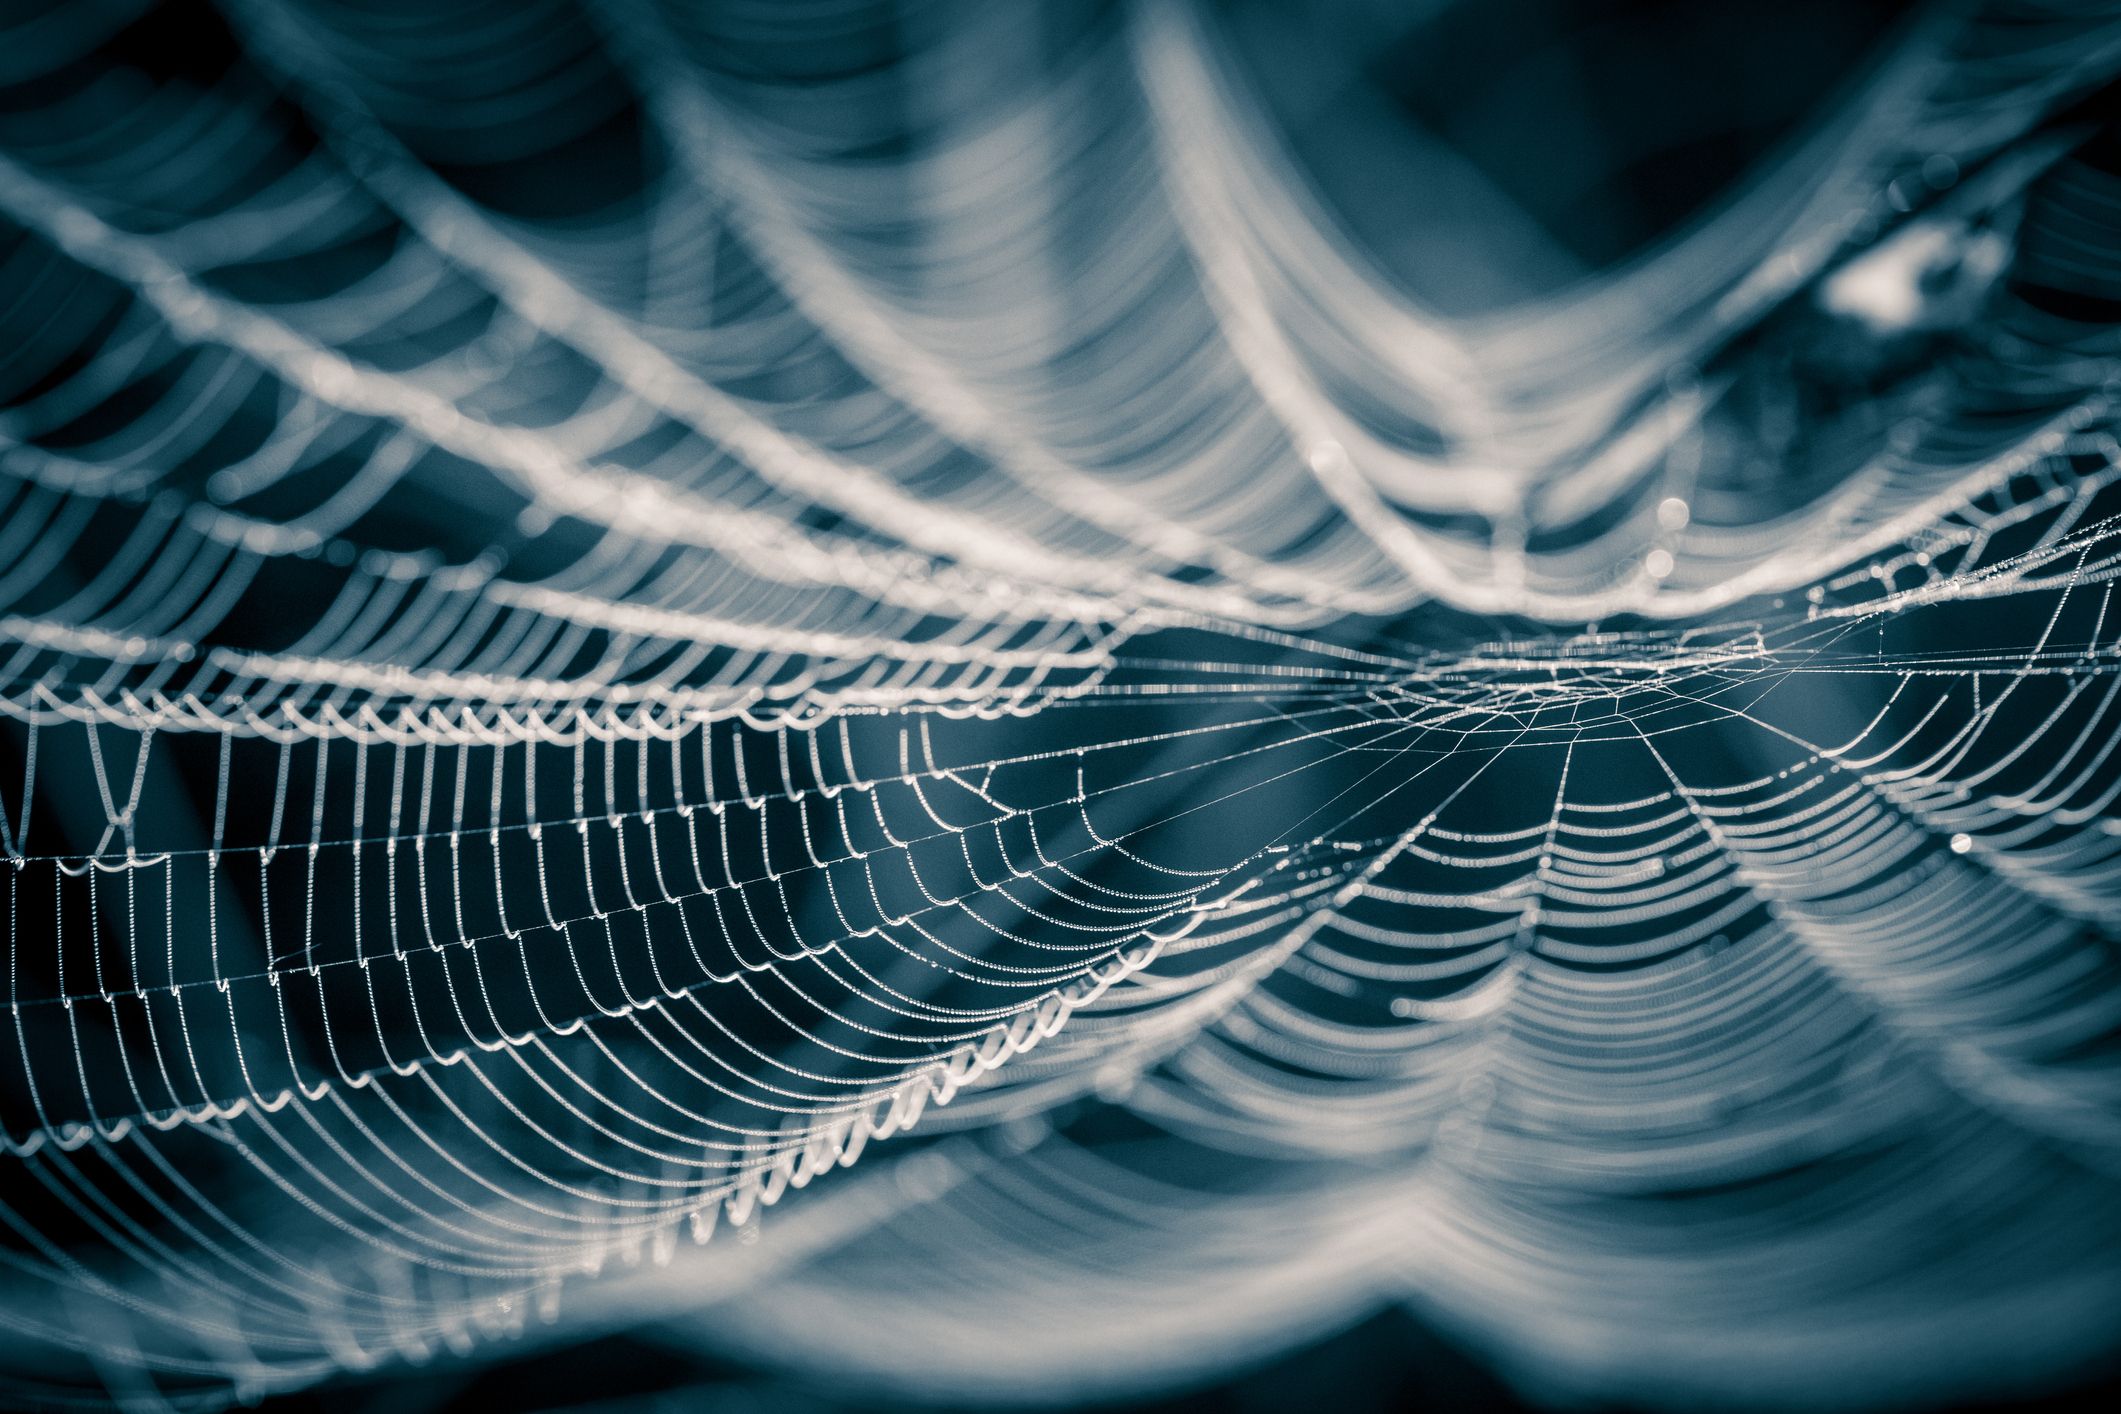 Traumdeutung Spinne: Darum träumt man vom Spinnennetz